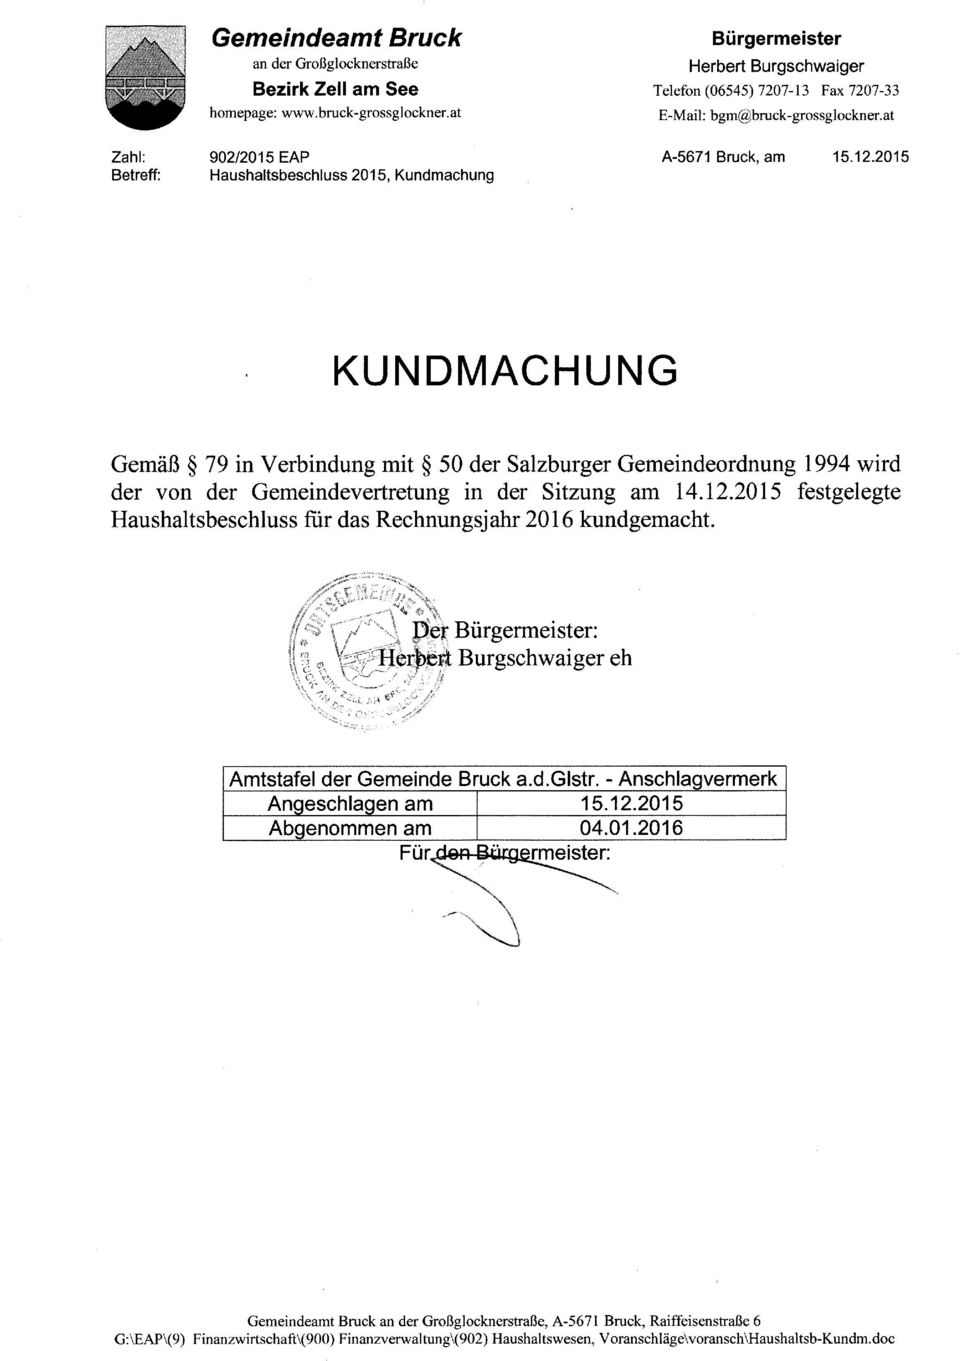 2015 KUNDMACHUNG Gemäß 79 in Verbindung mit 50 der Salzburger Gemeindeordnung 1994 wird der von der Gemeindevertretung in der Sitzung am 14.12.